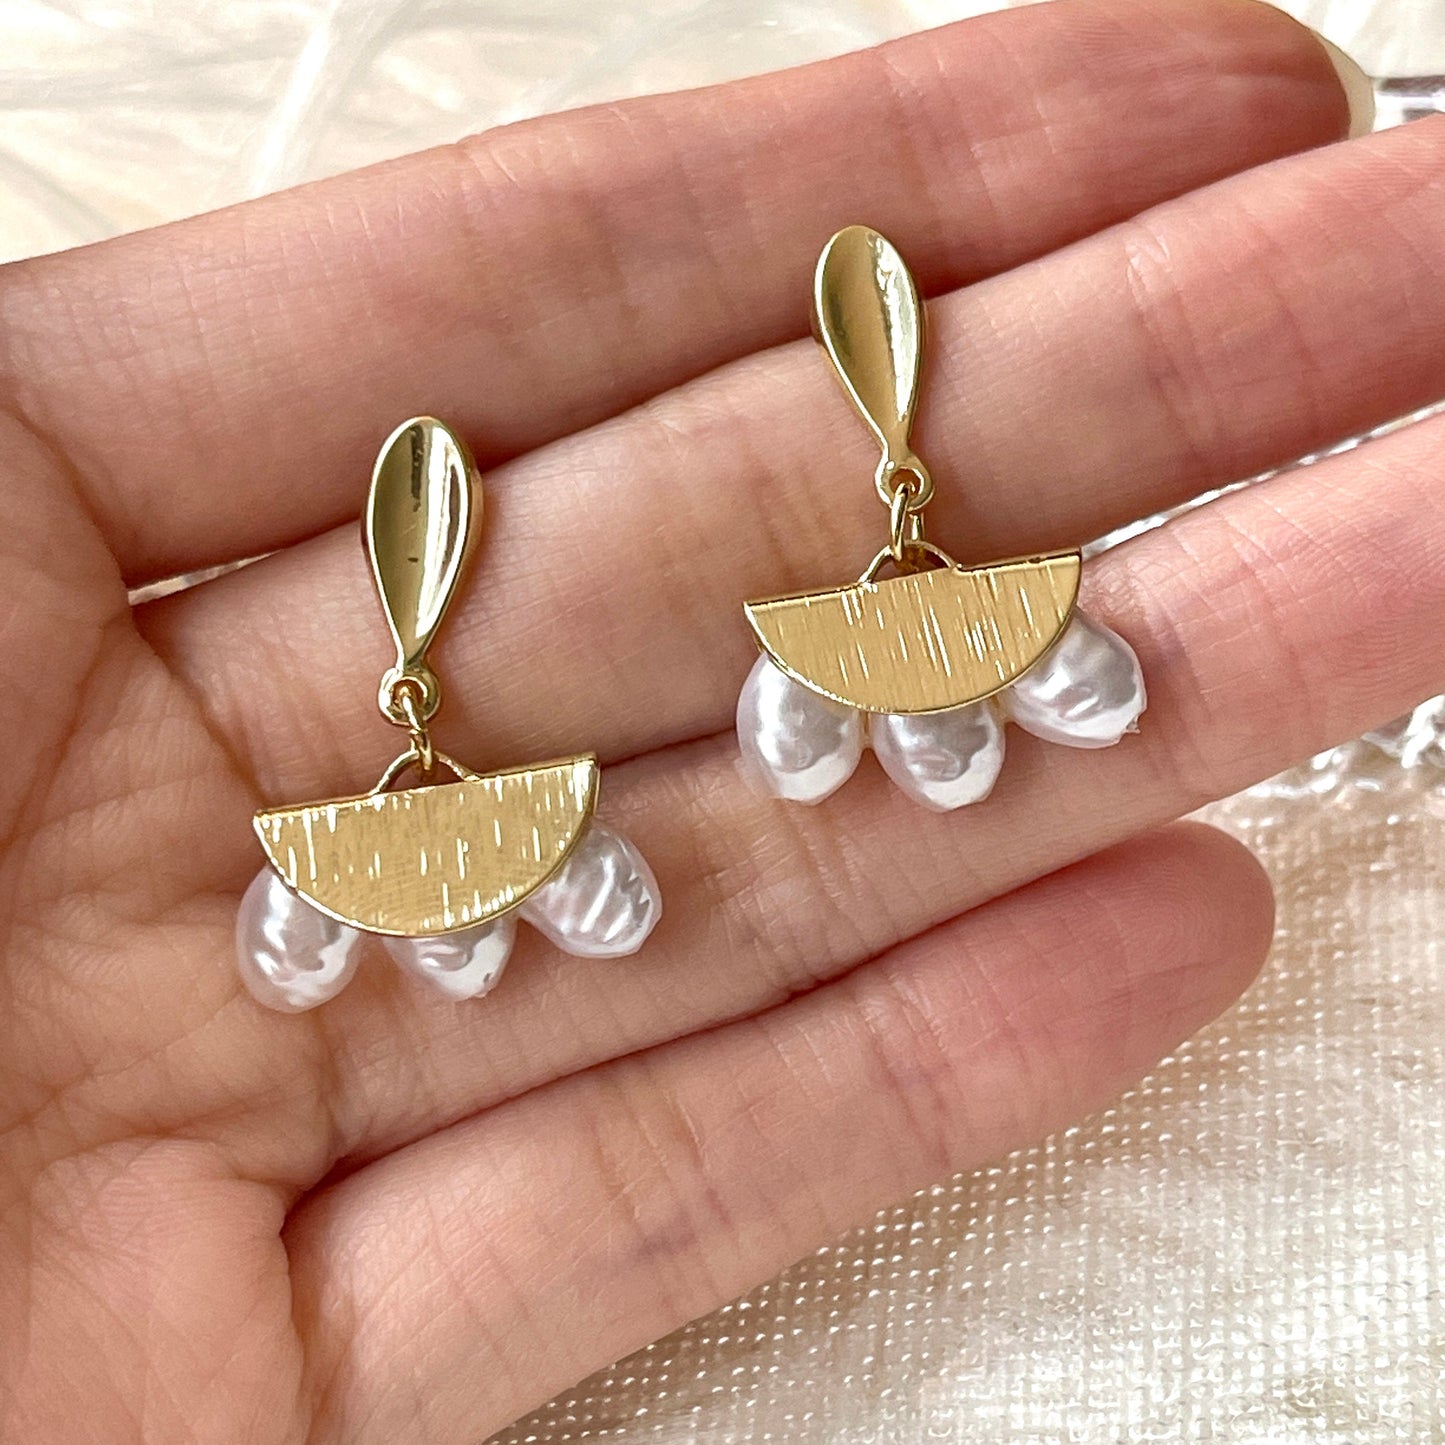 Fan dangle earrings, Gold pearl earrings, Sector drop earrings, Triangle boho earrings, Unique pearl earrings, Geometric earrings, Handmade